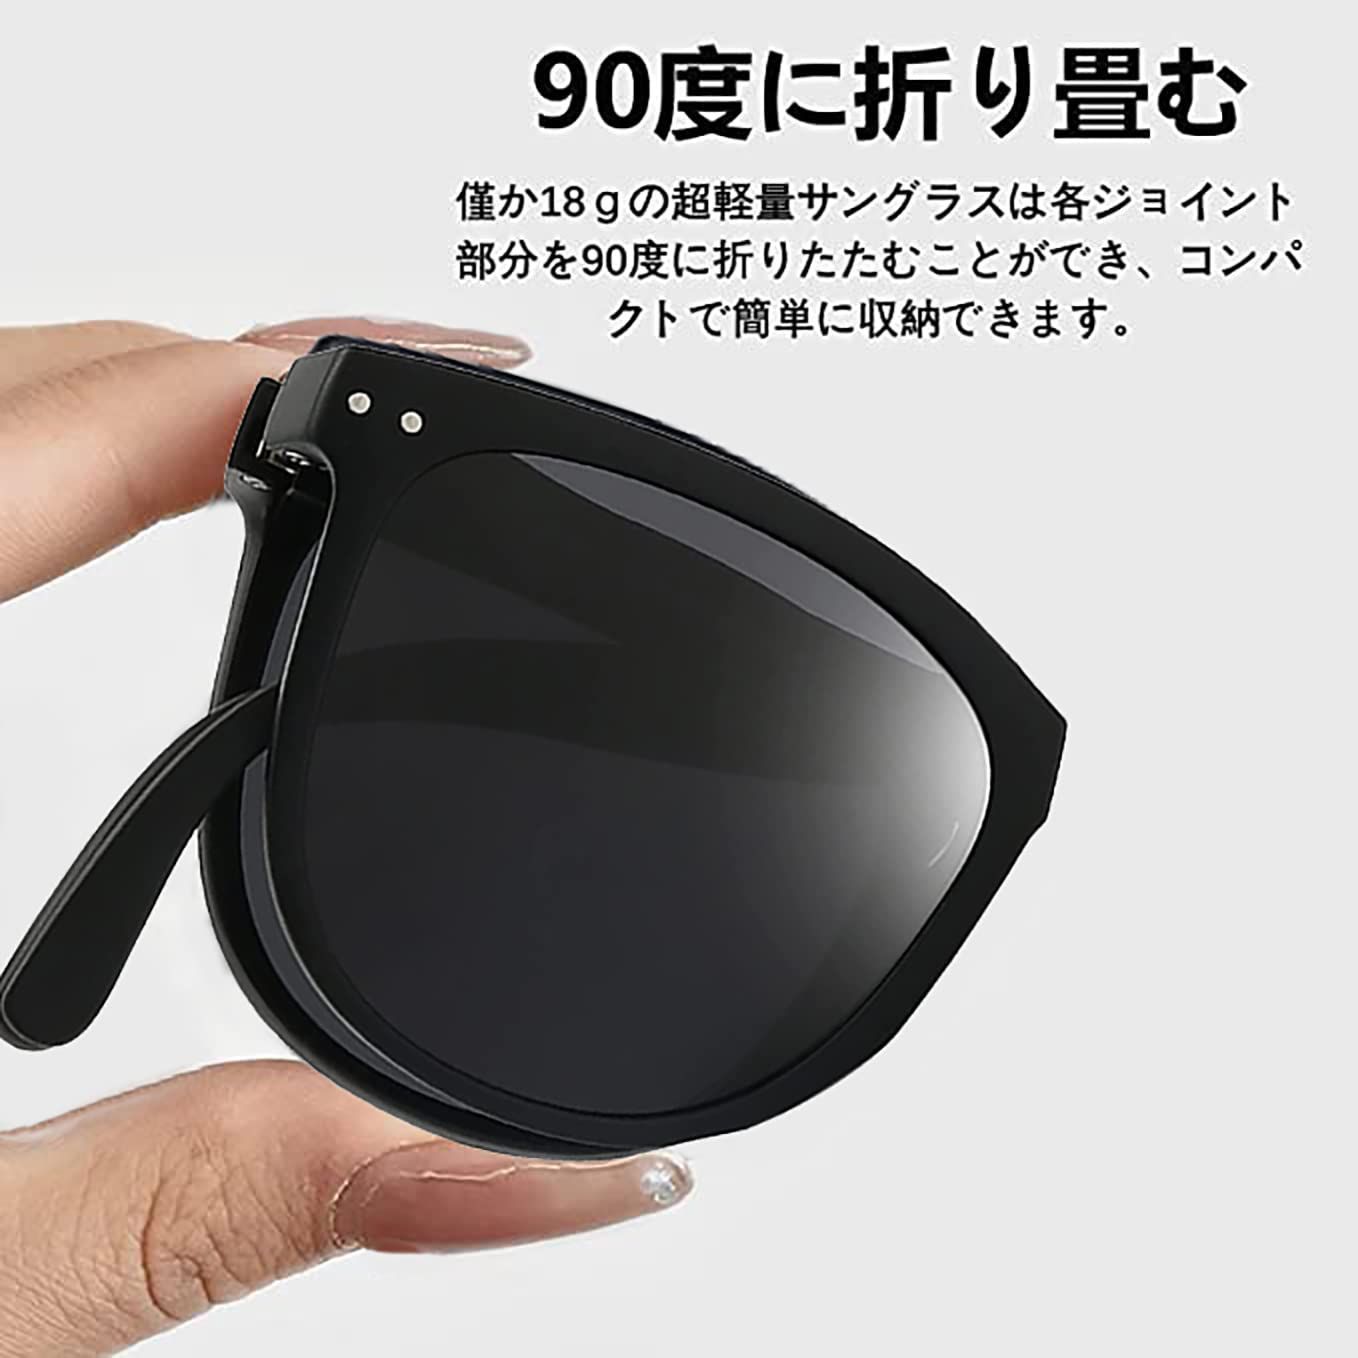 【色: ブラック】JOYI サングラス 偏光レンズ 100%紫外線カット UV4